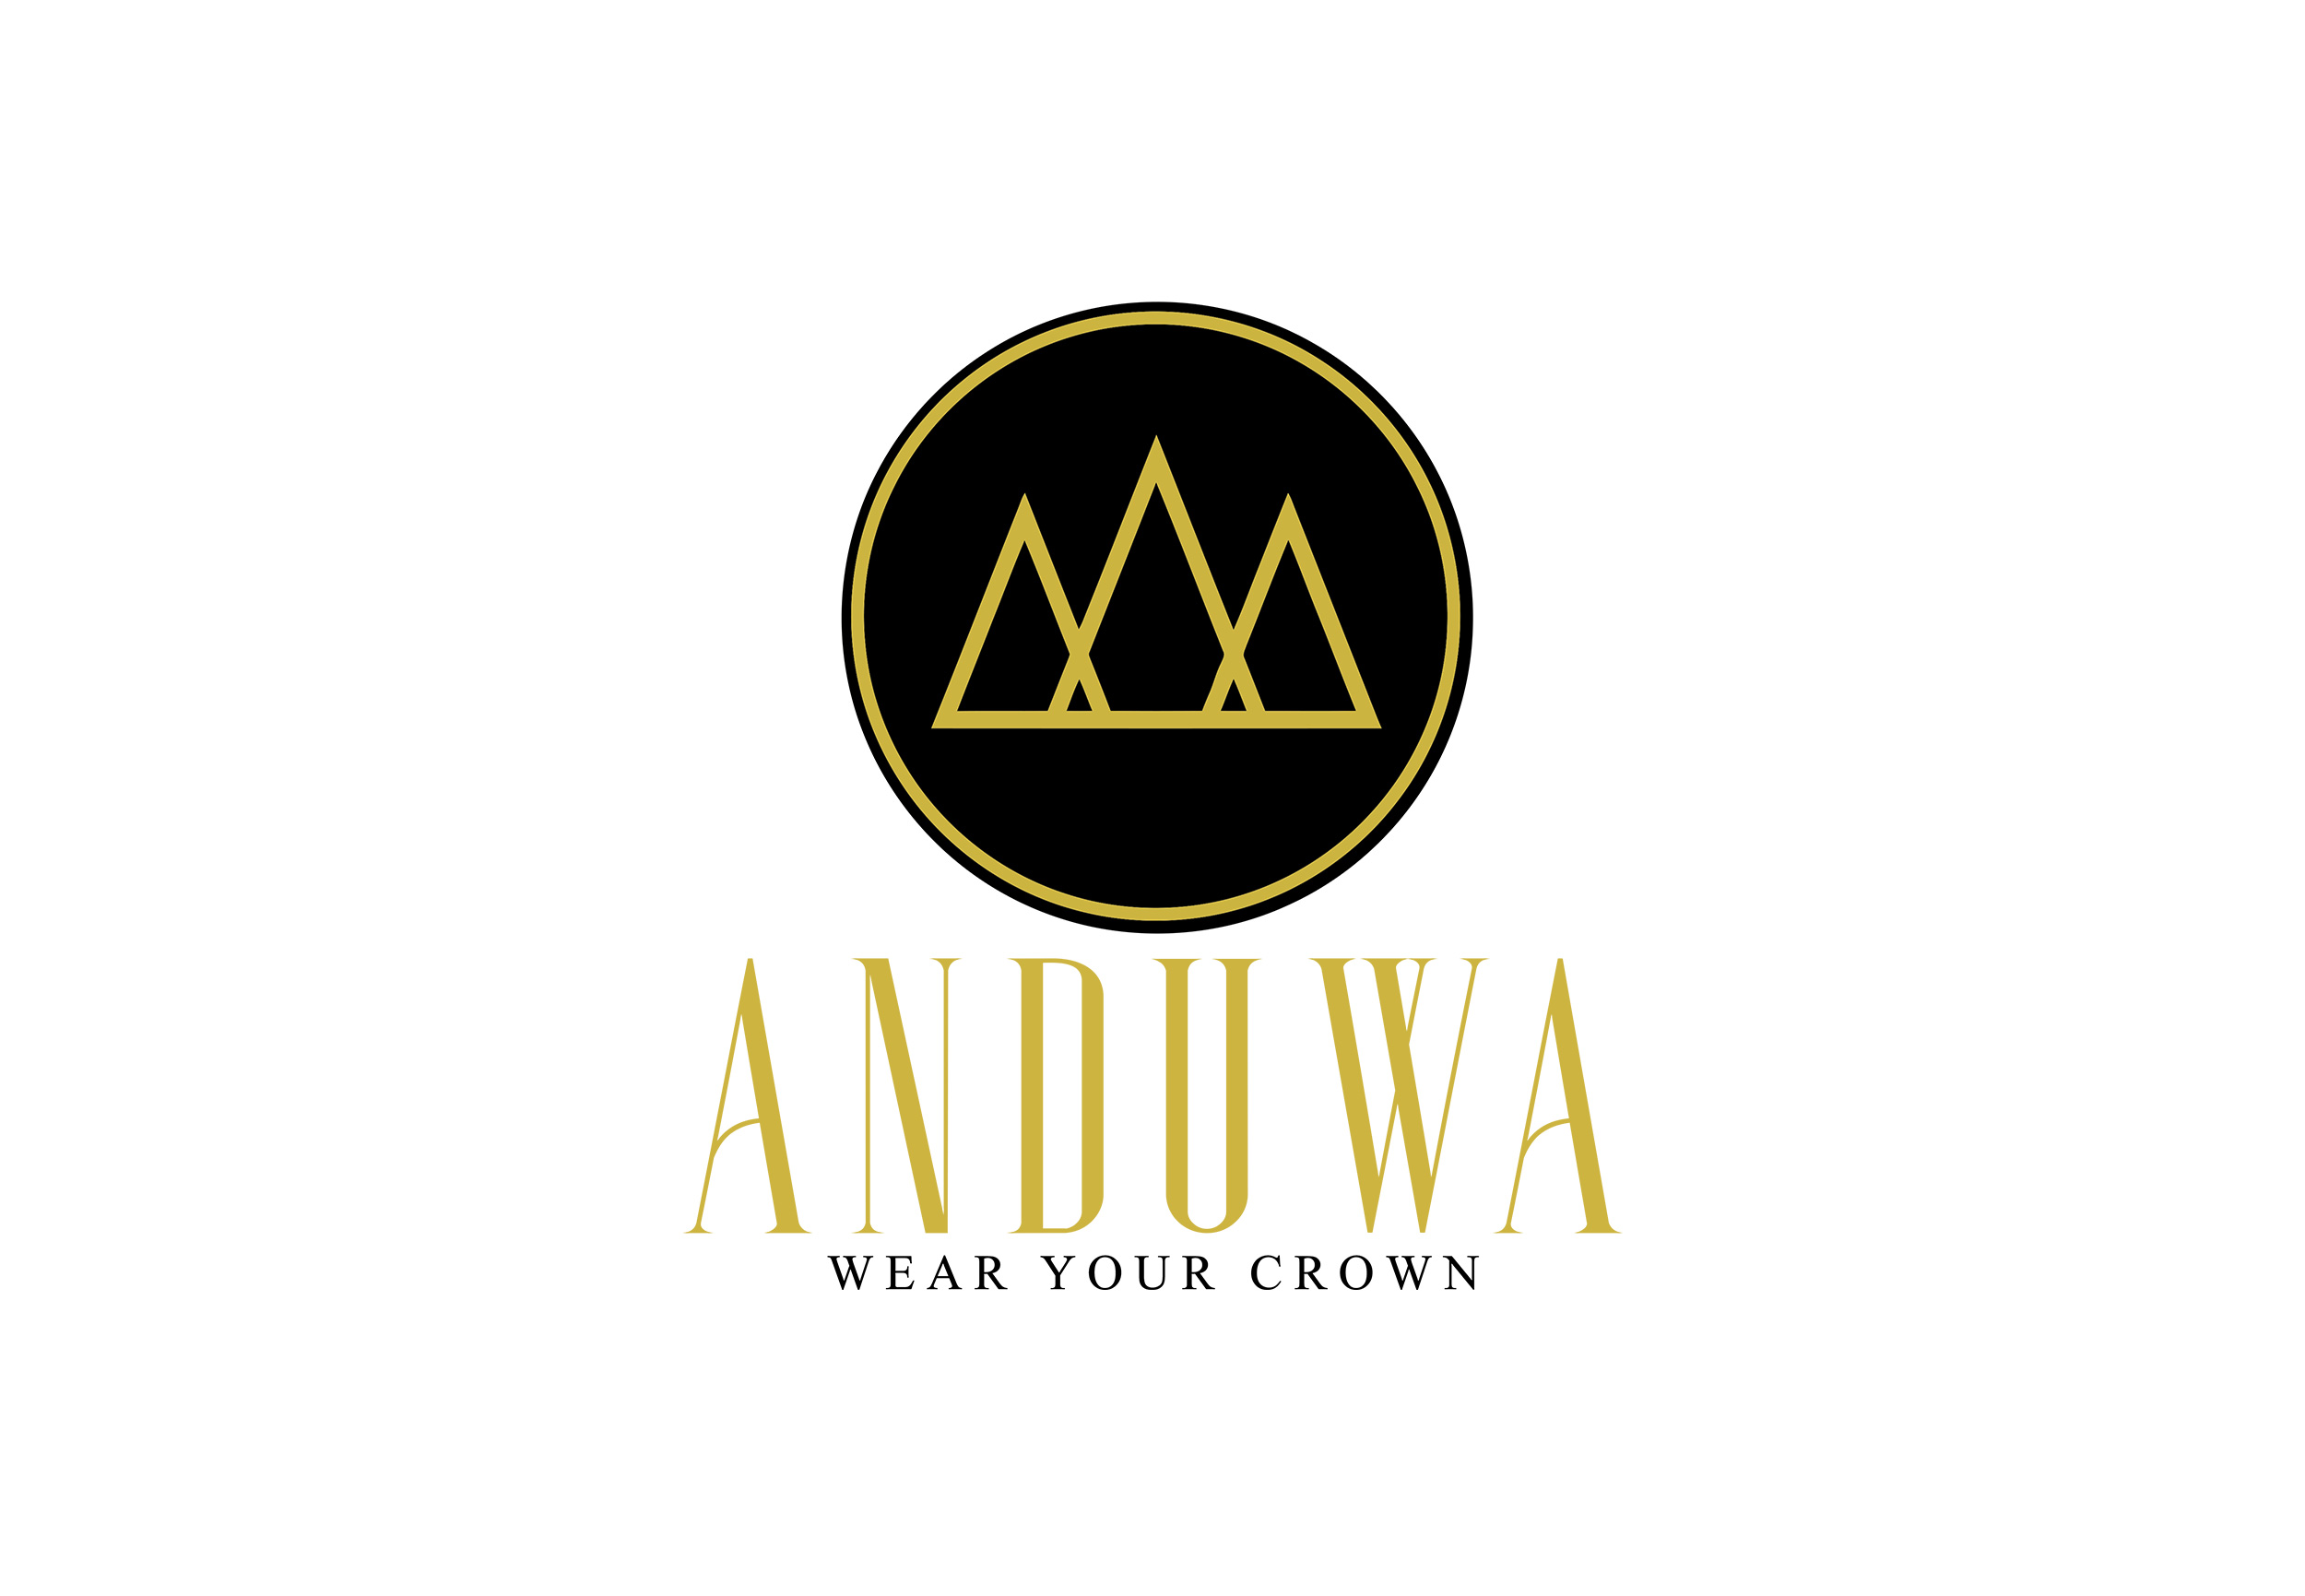 Anduwa Logo Design